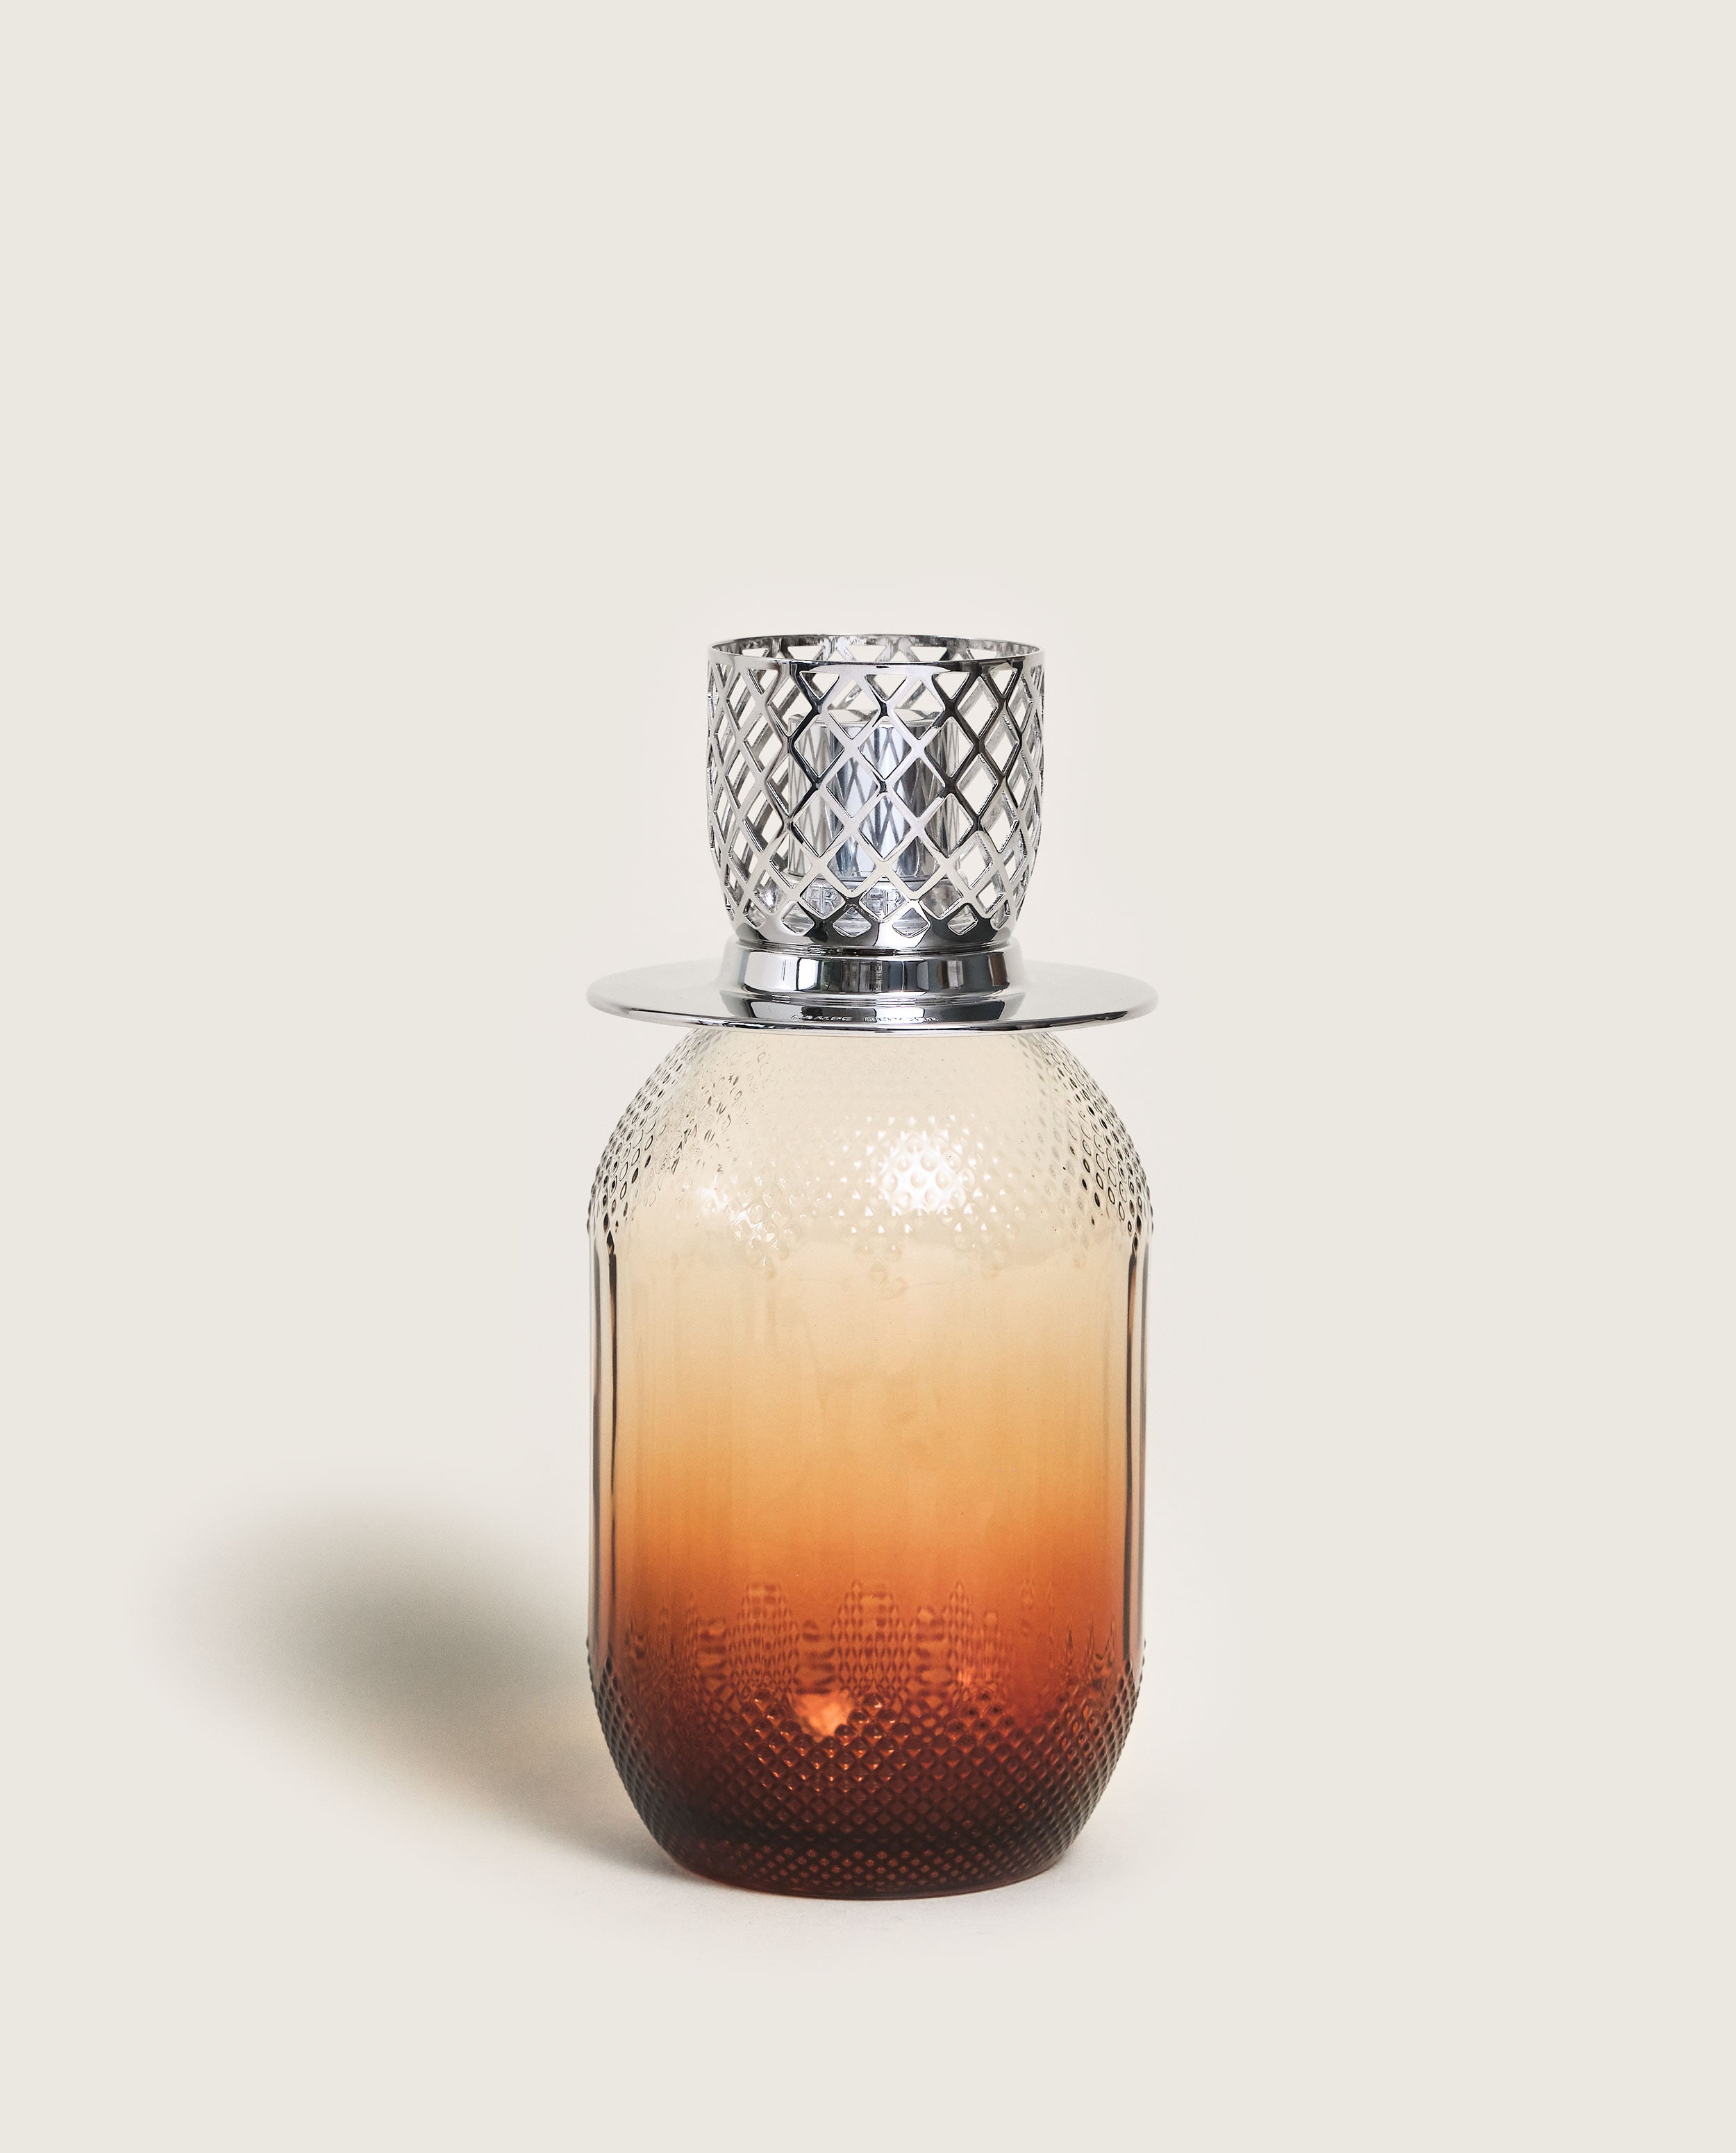 Lampe Berger Mystic Leather Fragrance Oil 1 Liter – Fragrance Oils Direct